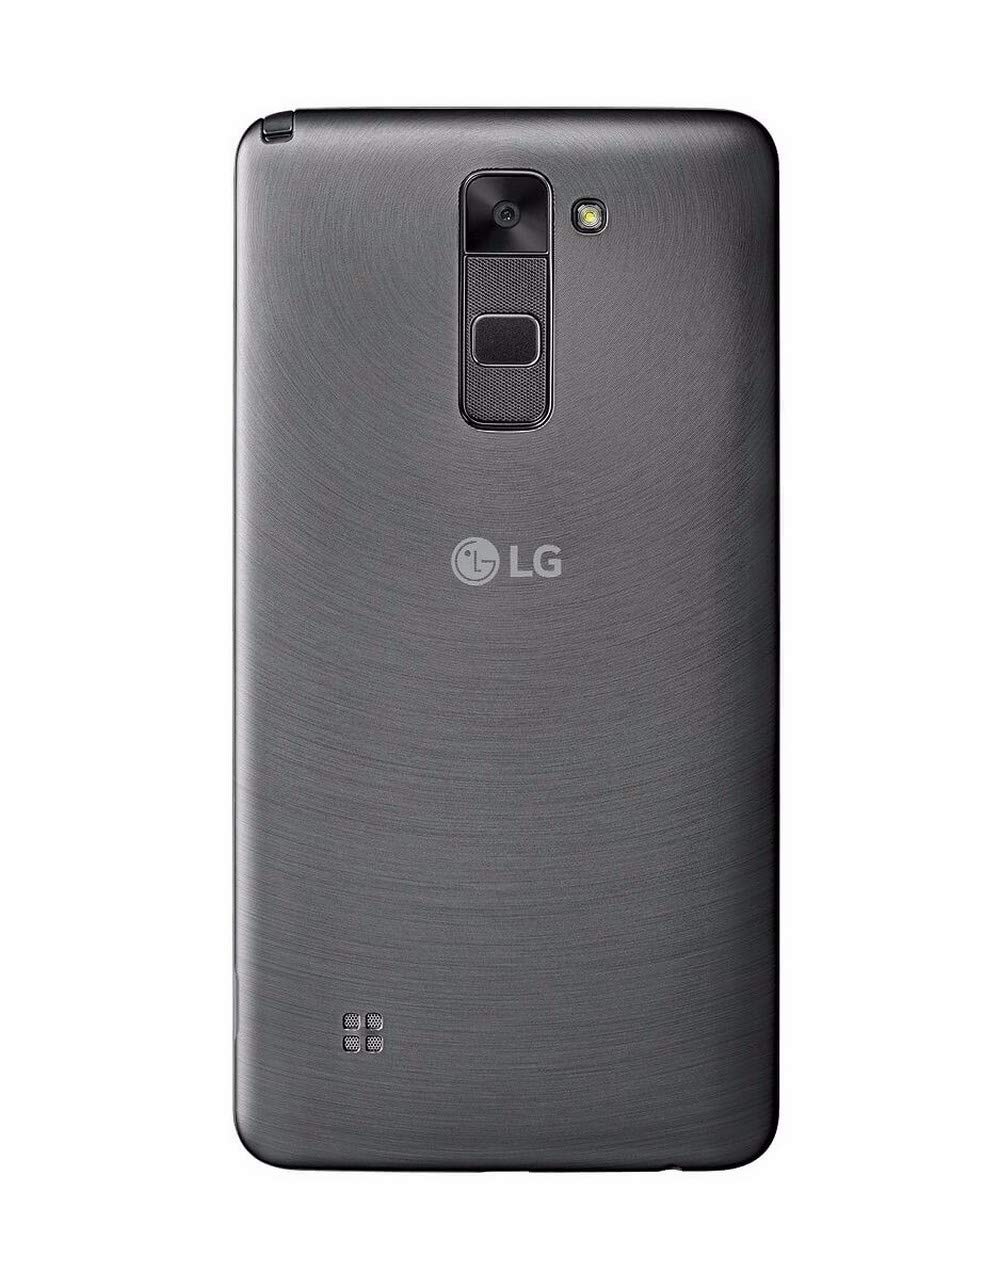 LG Stylo 2 Prepaid Carrier Locked - Retail Packaging (Virgin Mobile)